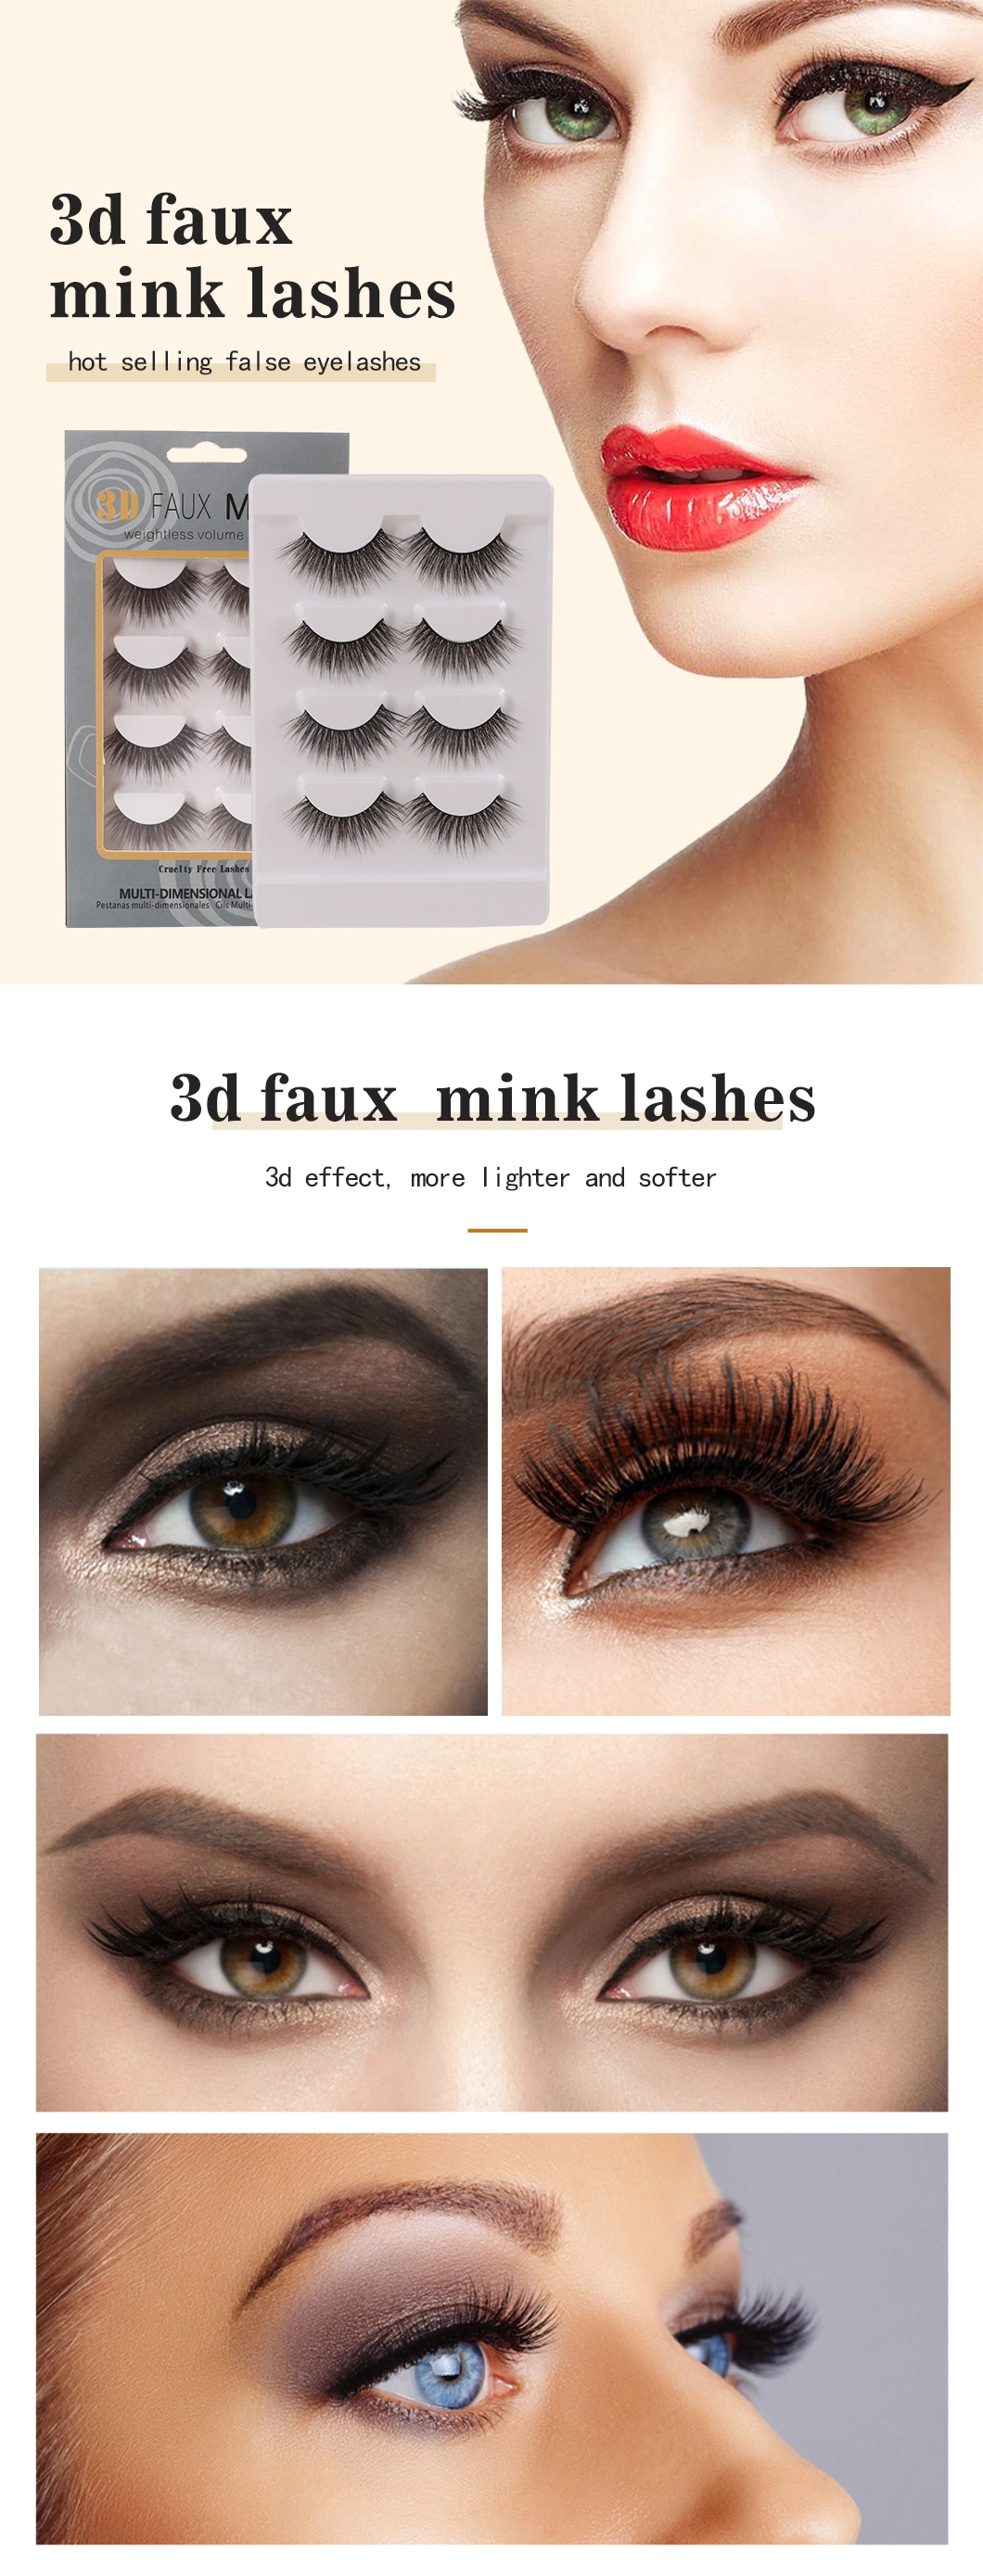 Wholesale Faux Mink Lashes Private Label Dramatic Faux Mink Lashes 3D 4D 5D 6D Faux Mink Eyelashes